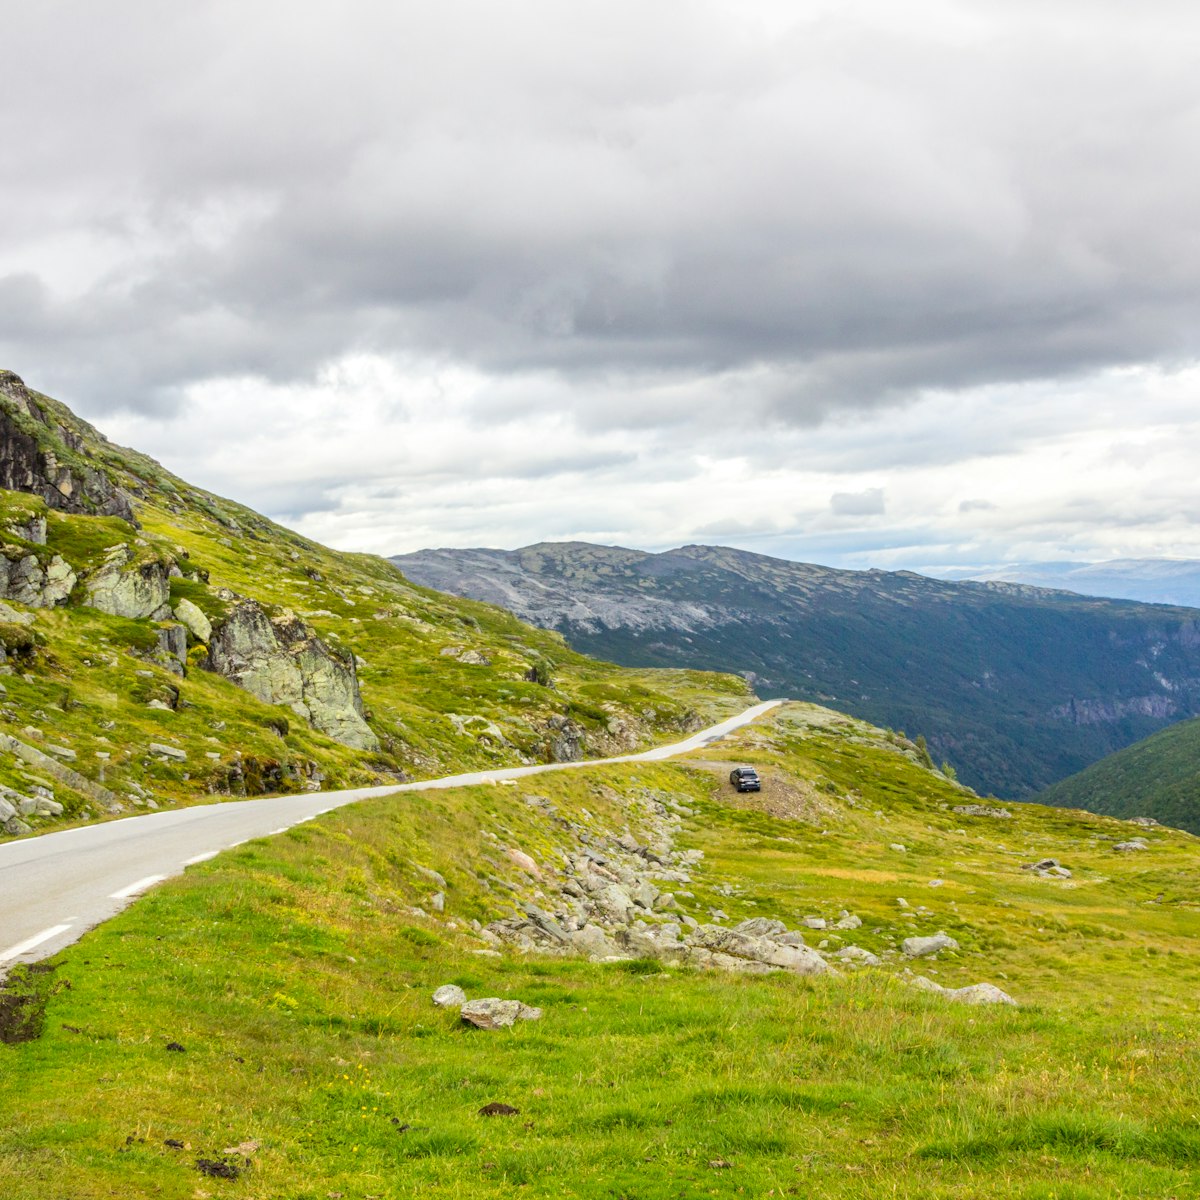 Aurlandsfjellet panoramic road in Norway.